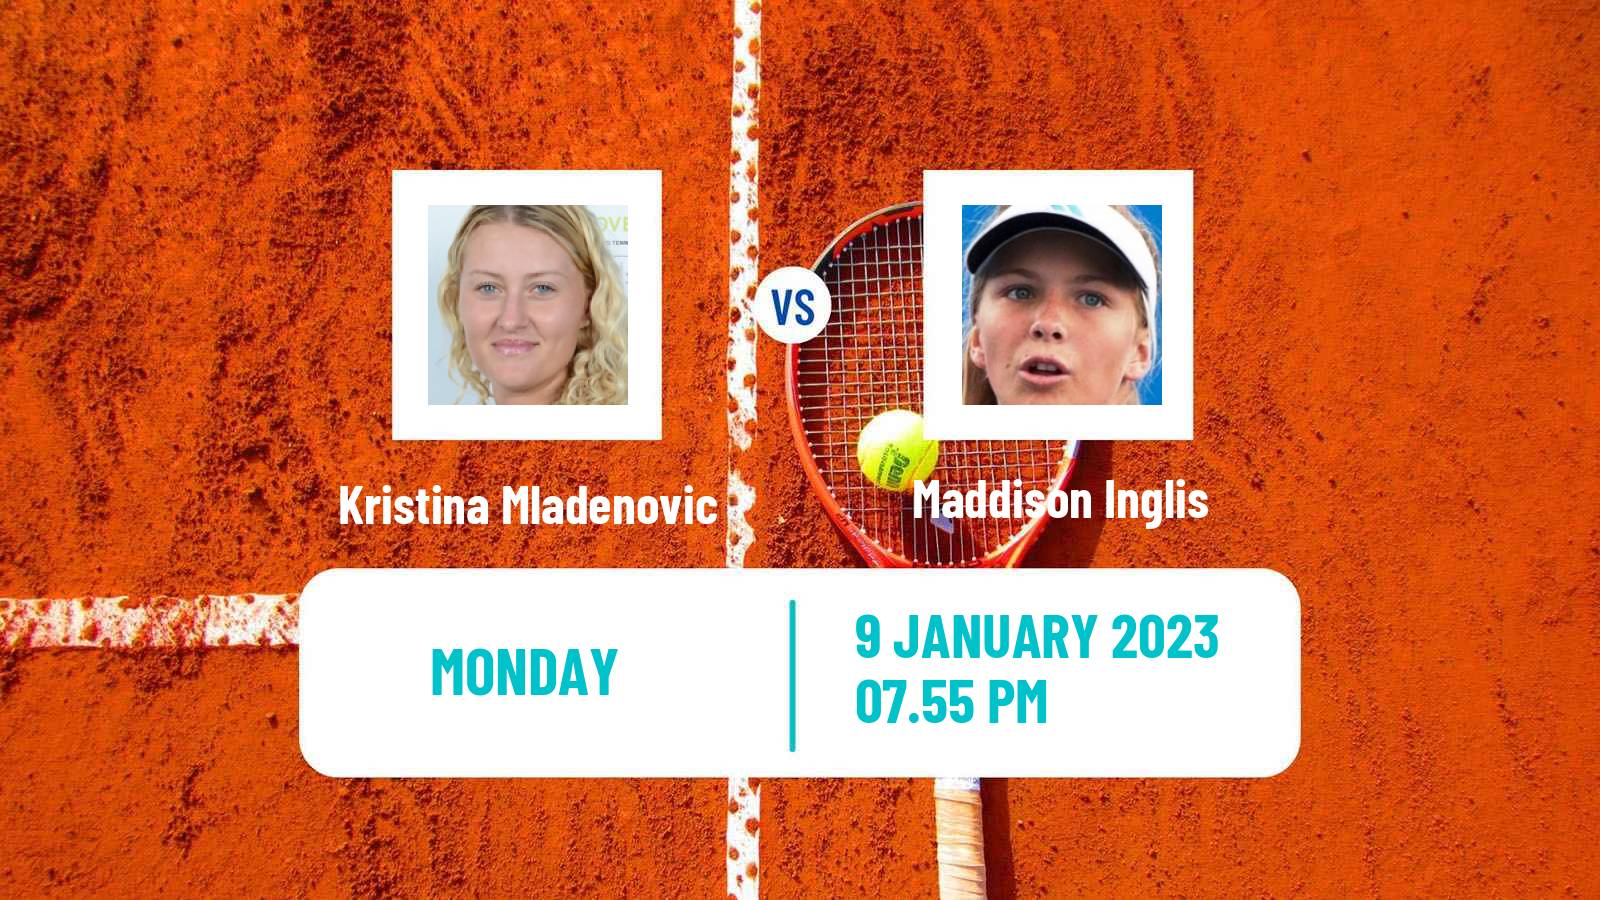 Tennis WTA Australian Open Kristina Mladenovic - Maddison Inglis